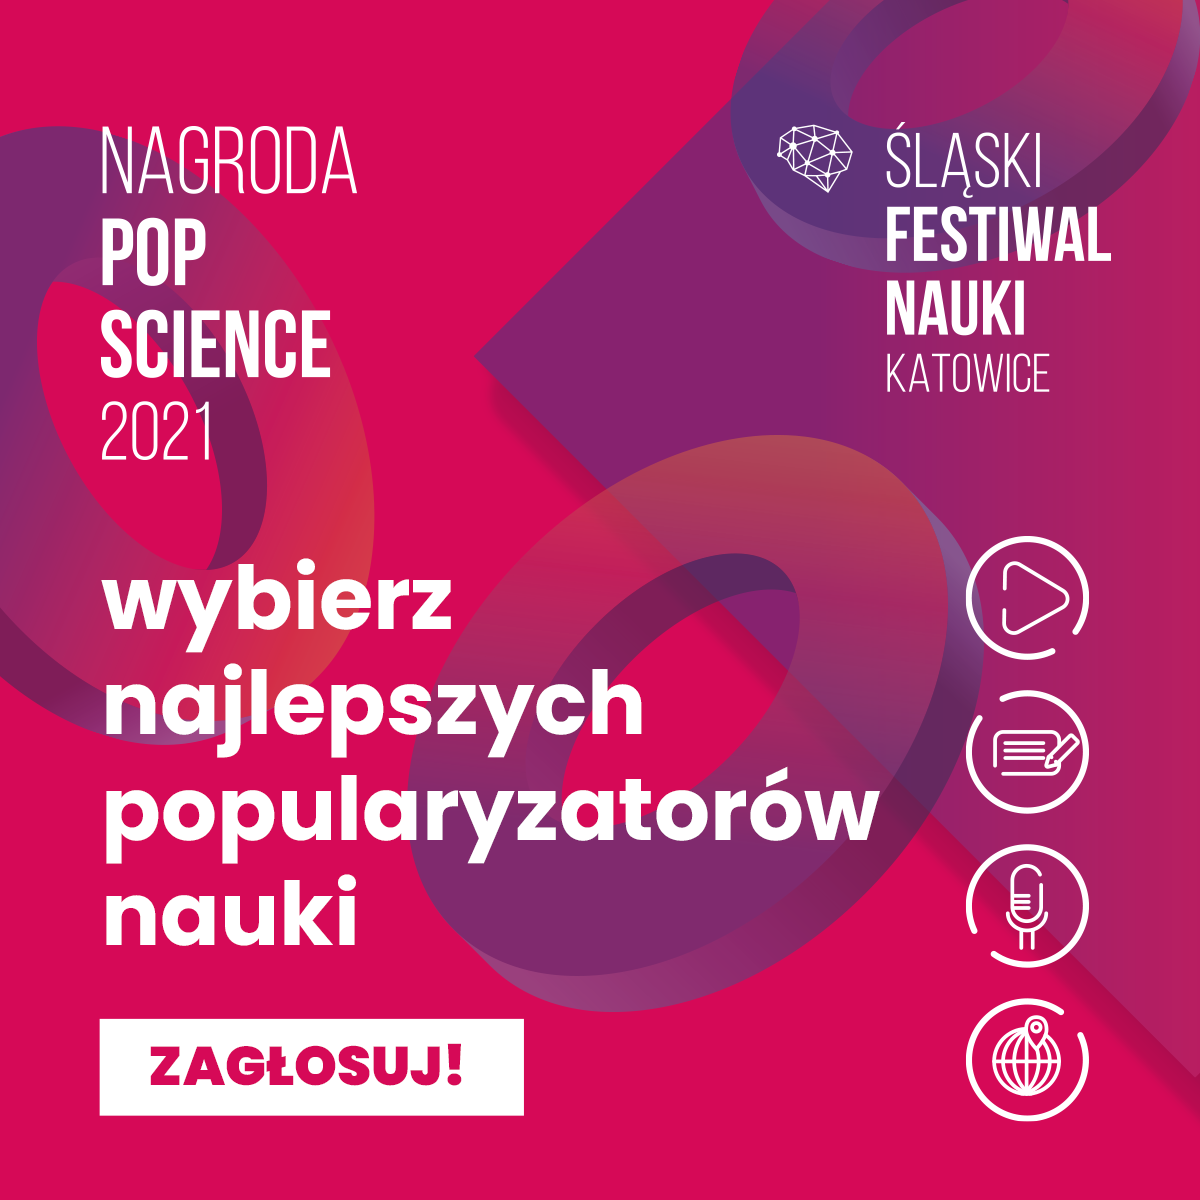 Grafika w odcieniach czerwonego, różowego i fioletowego. Po lewej stronie napisy: Nagroda POP Science 2021, Wybierz najlepszych popularyzatorów nauki oraz Zagłosuj!, po prawej stronie napisy Śląski Festiwal Nauki KATOWICE oraz piktogramy kategorii